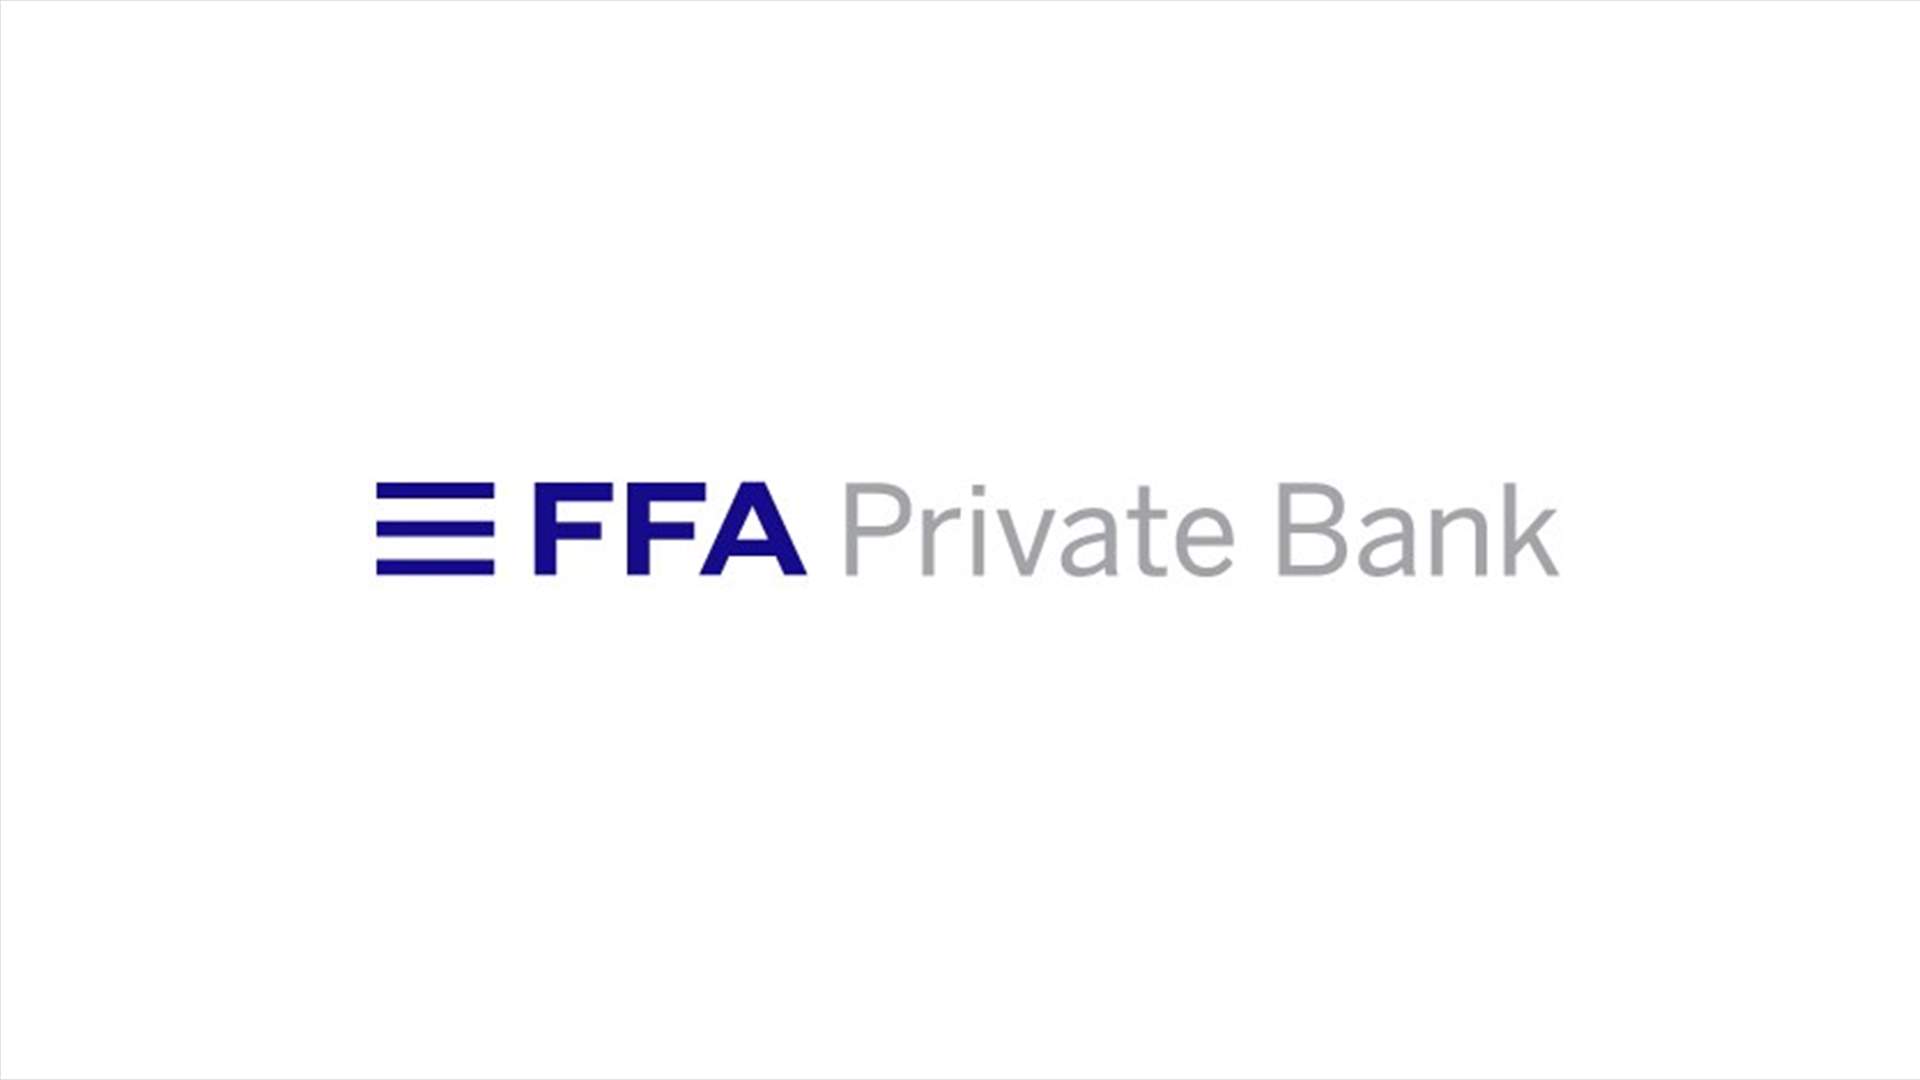 مجموعة FFA Private Bank  طبقت المتطلبات النظامية للتعميم 154ونسبة كفاية رأسمالها وصلت الى 61 في المئة